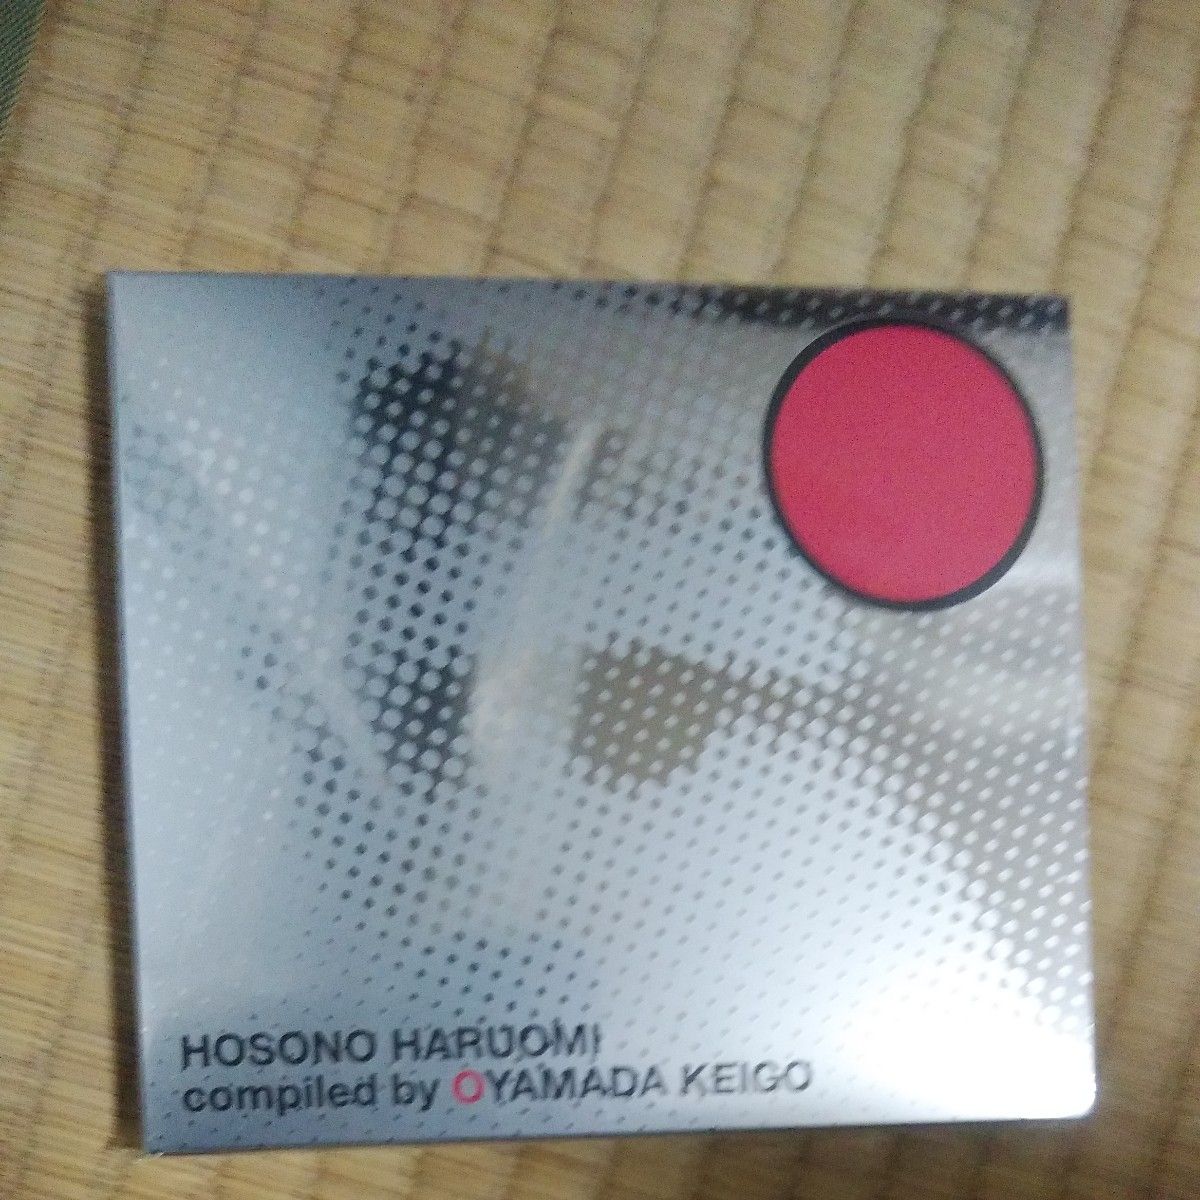 細野晴臣 2CD/HOSONO HARUOMI Compiled by OYAMADA KEIGO 19/9/25発売